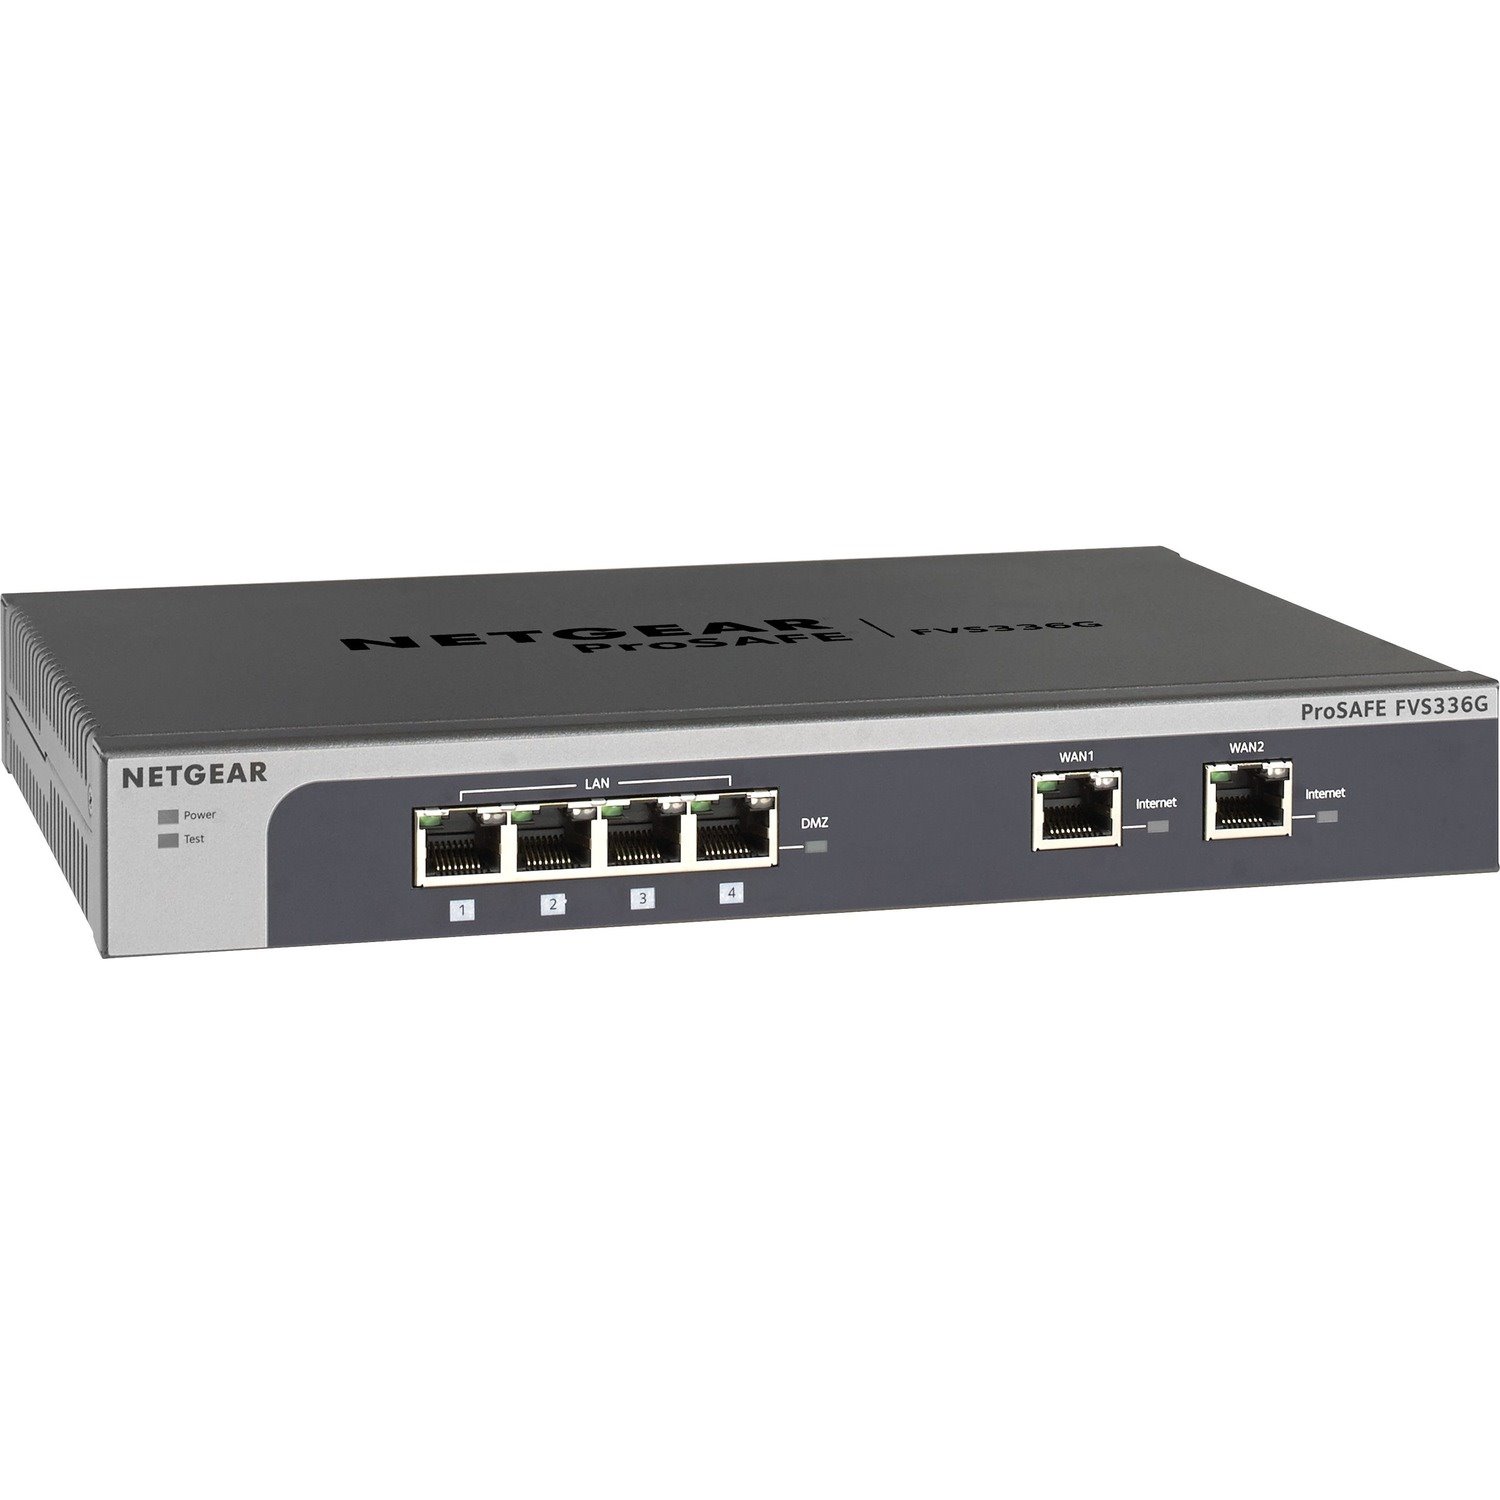 Netgear ProSafe FVS336G-300 Network Security/Firewall Appliance